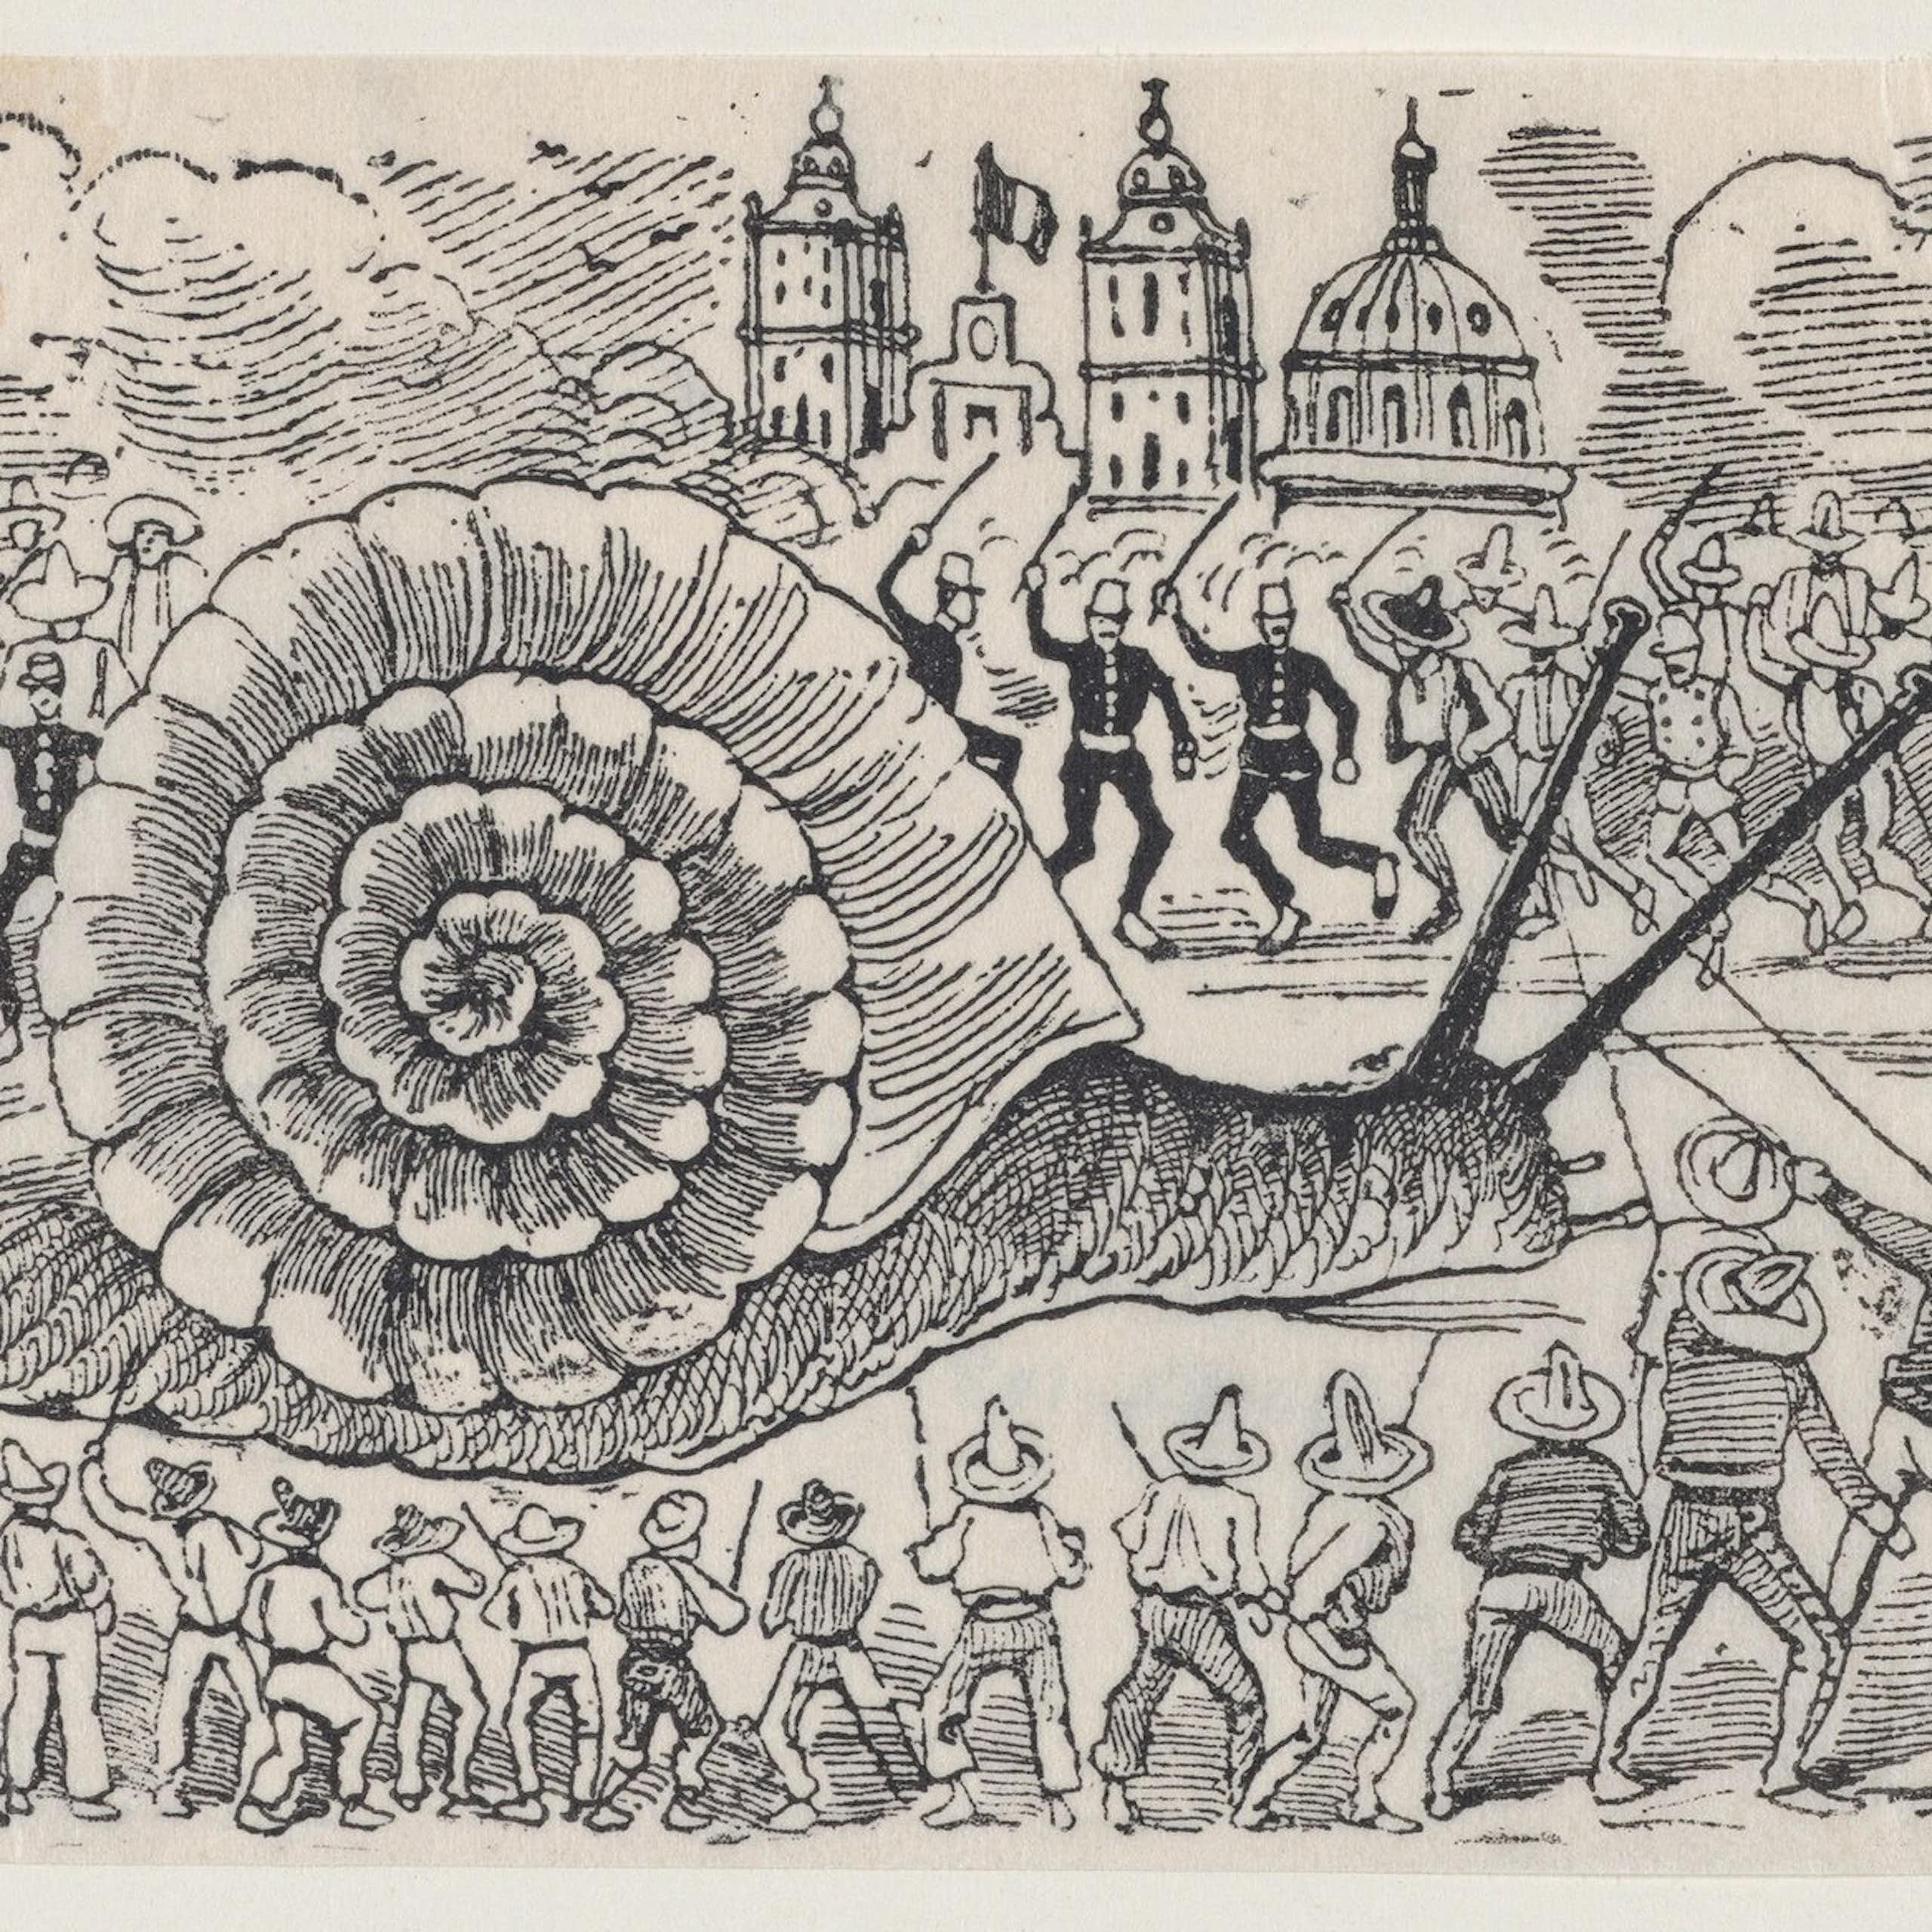 Dessin de José Guadalupe Posada représentant un escargot géant attaqué par des groupes d'hommes